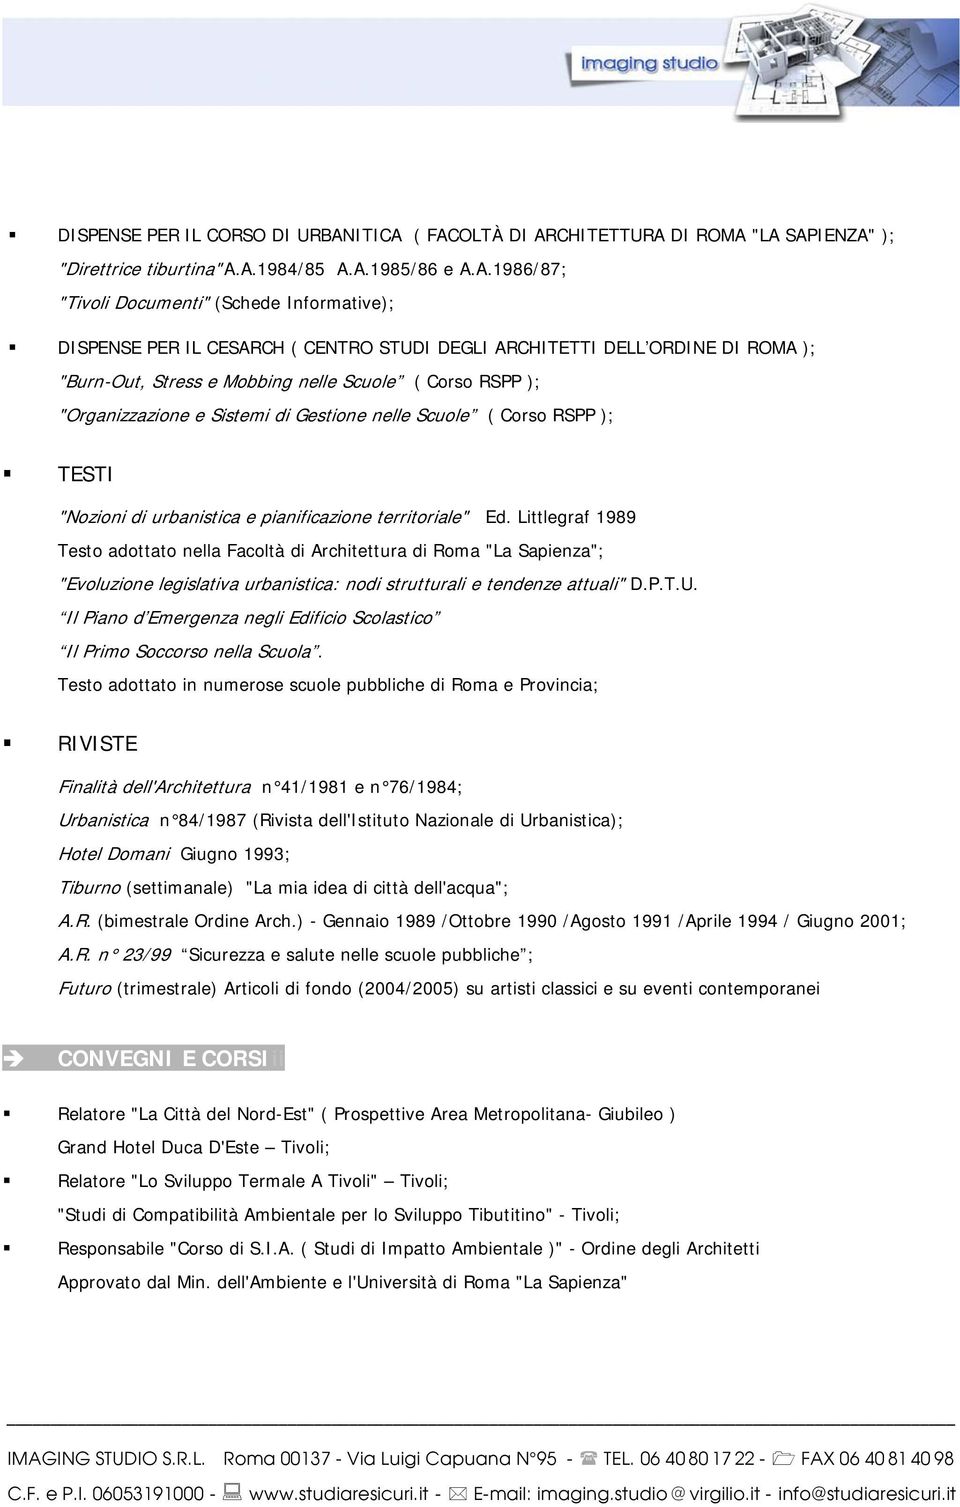 ( FACOLTÀ DI ARCHITETTURA DI ROMA "LA SAPIENZA" ); "Direttrice tiburtina" A.A.1984/85 A.A.1985/86 e A.A.1986/87; "Tivoli Documenti" (Schede Informative); DISPENSE PER IL CESARCH ( CENTRO STUDI DEGLI